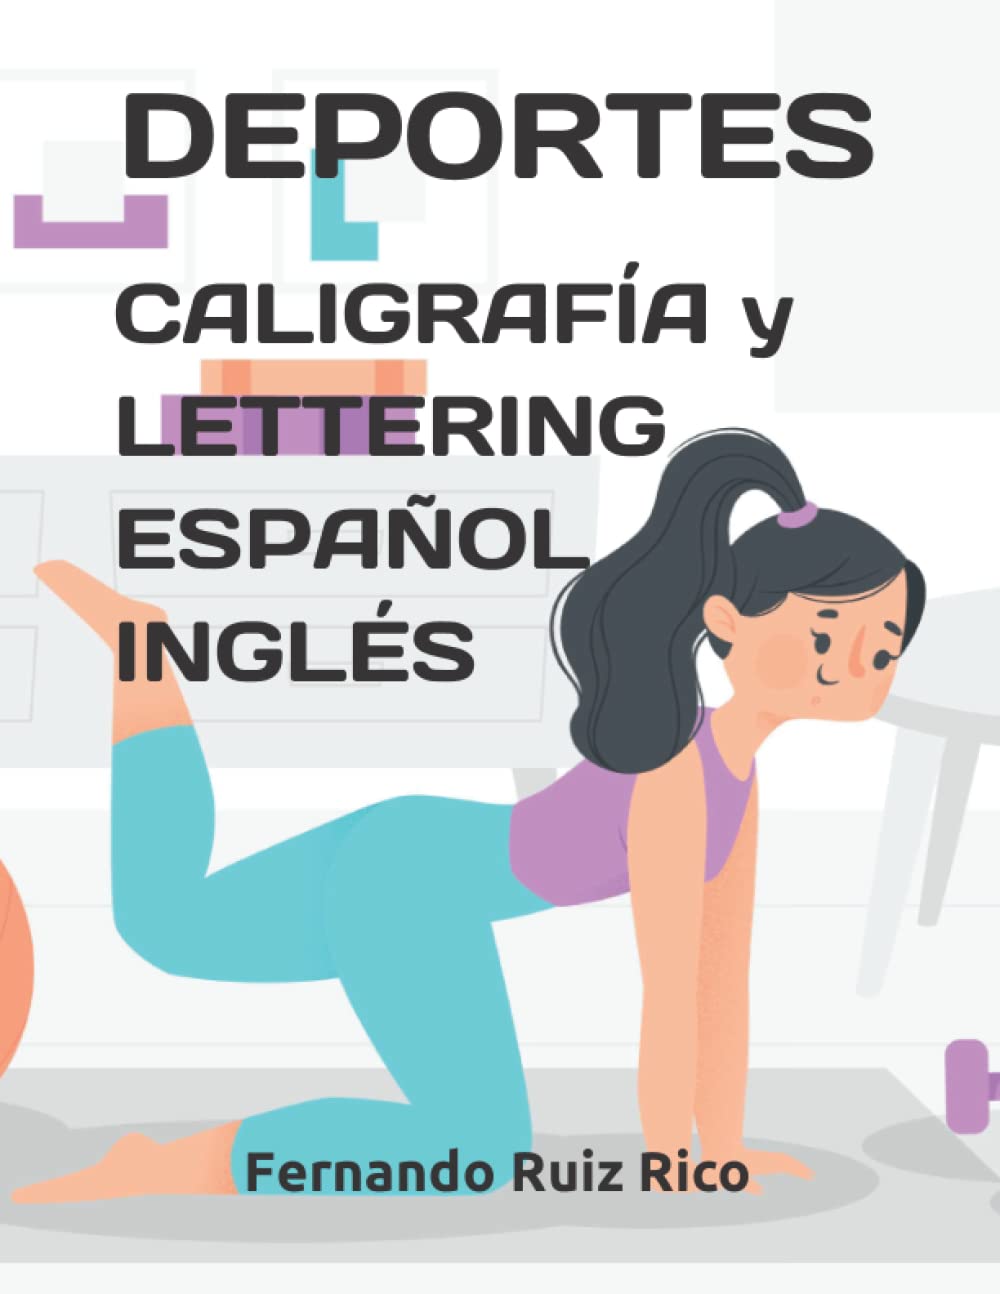 Deportes: Caligrafía y lettering español inglés